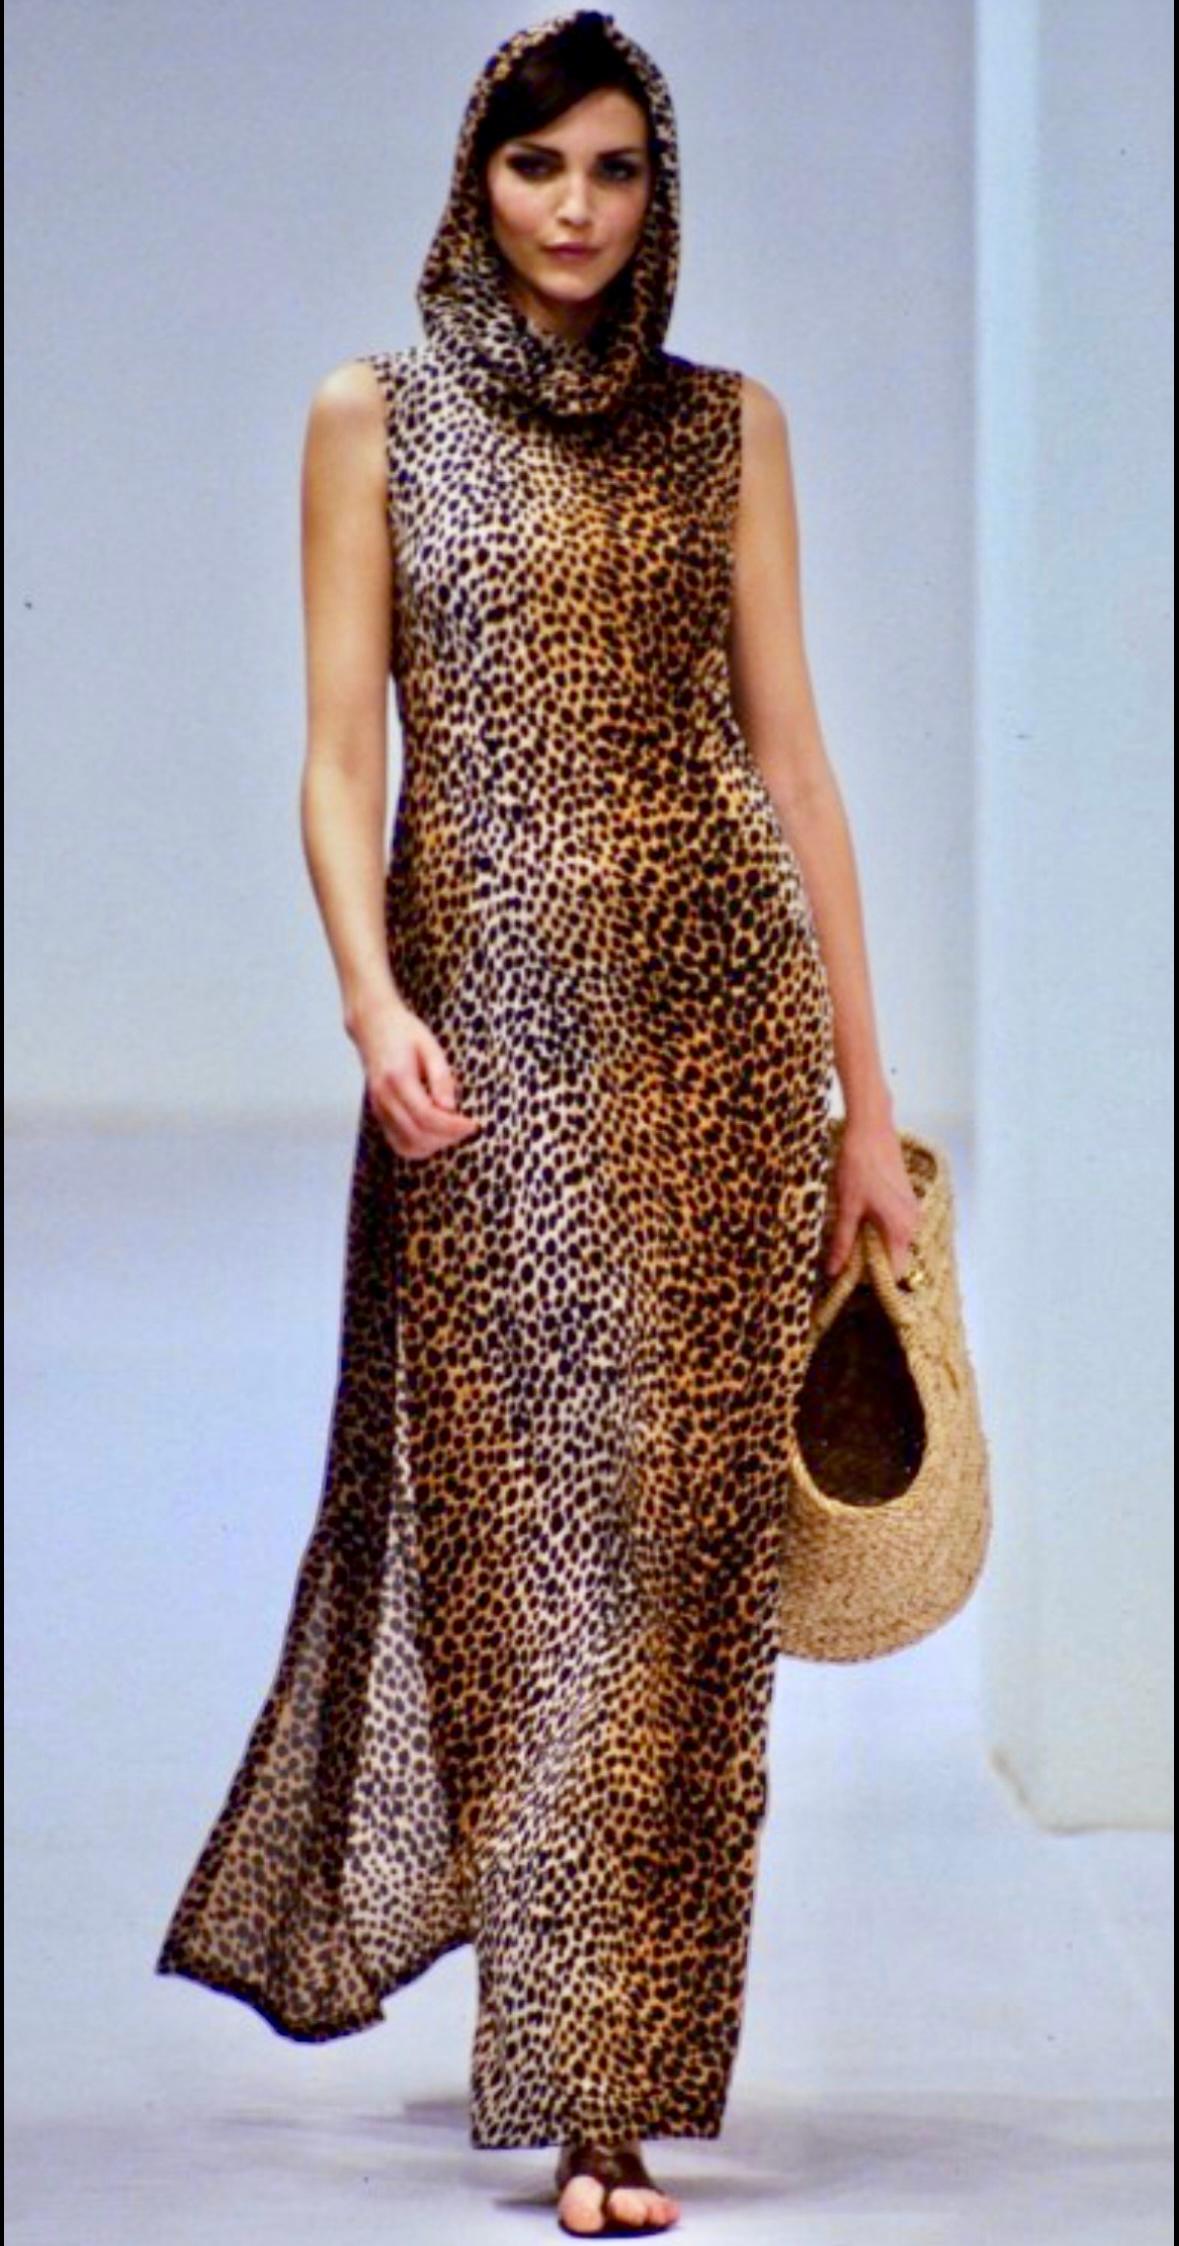 Collectional présente une fabuleuse robe à capuche Dolce and Gabbana à imprimé guépard de la collection printemps/été 1996. Un look similaire a fait ses débuts sur le podium de la saison, défilé par Nadja Auermann, et est apparu dans la campagne